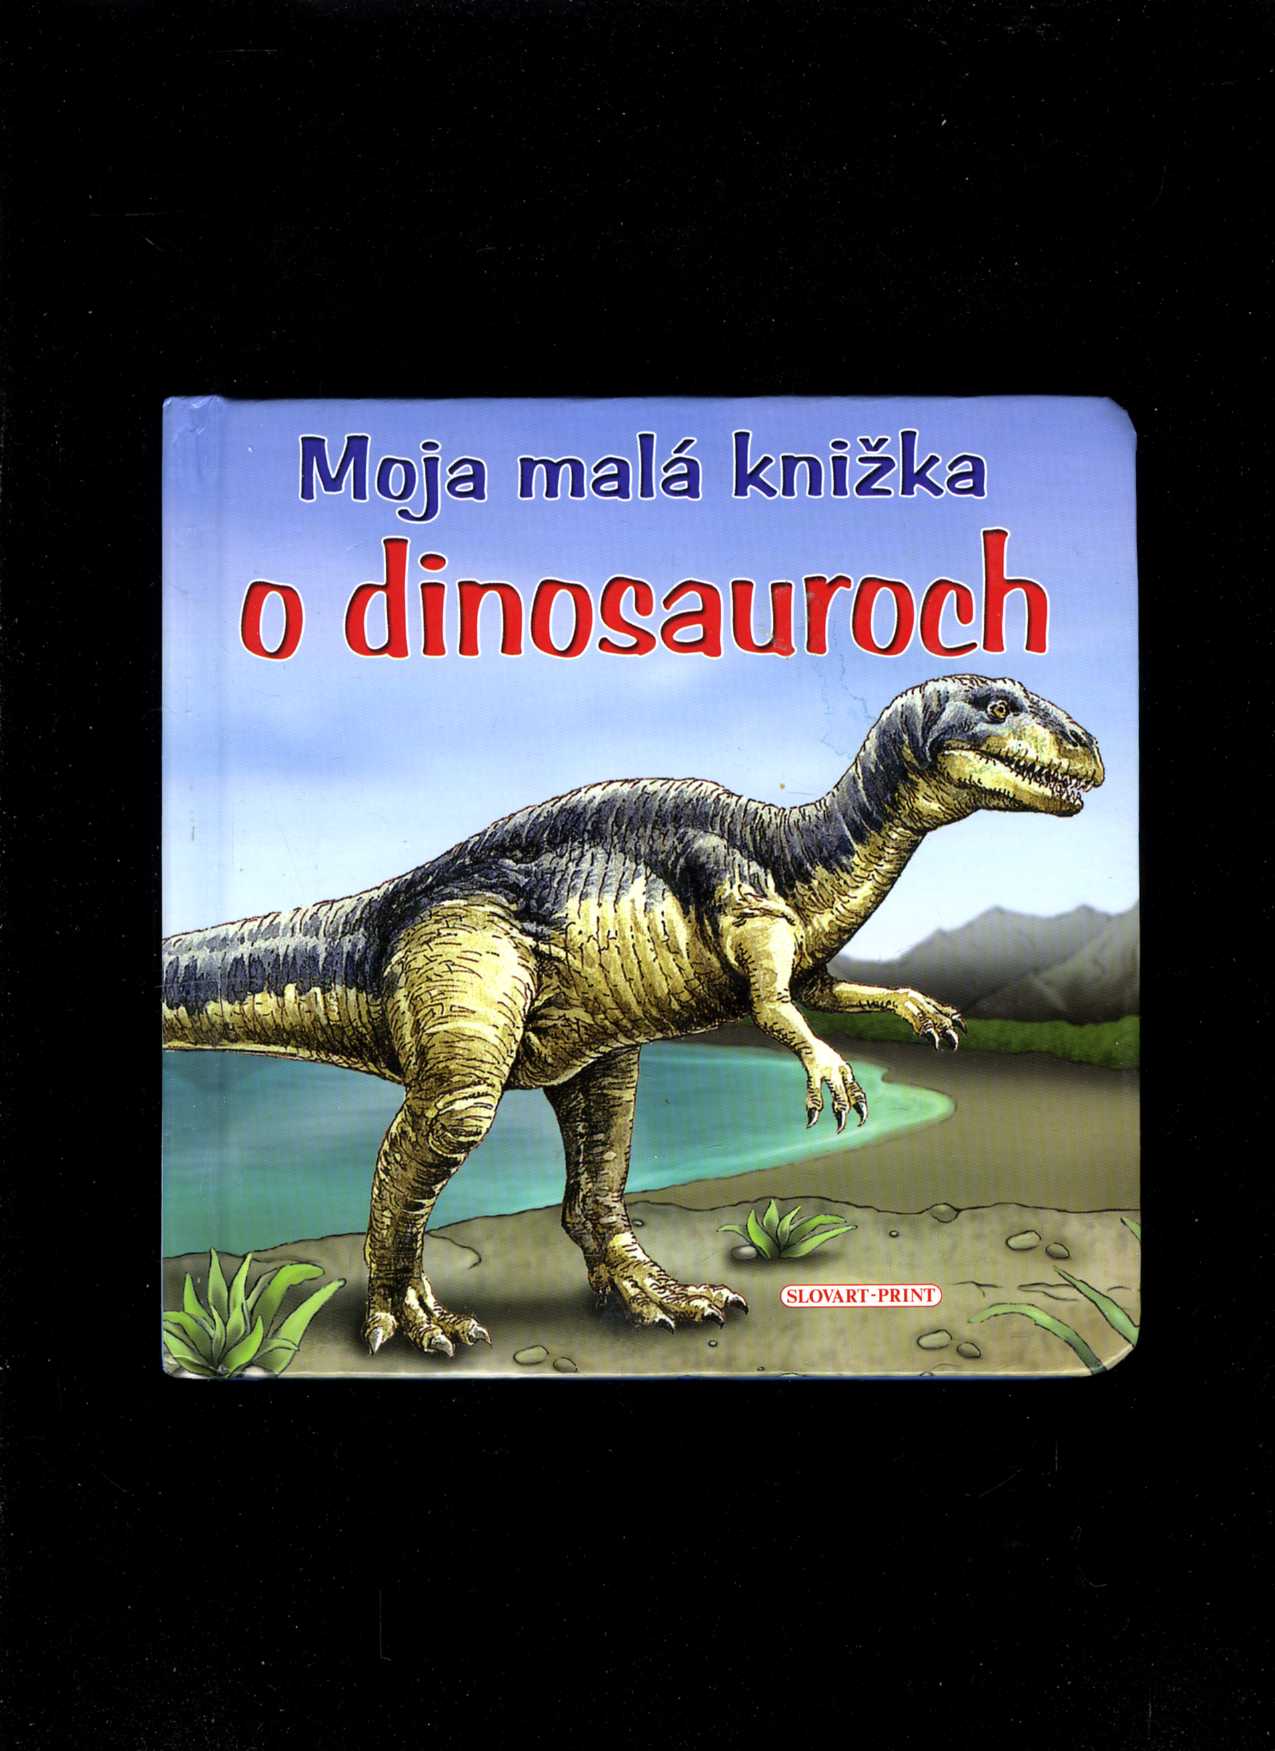 Moja malá knižka o dinosauroch